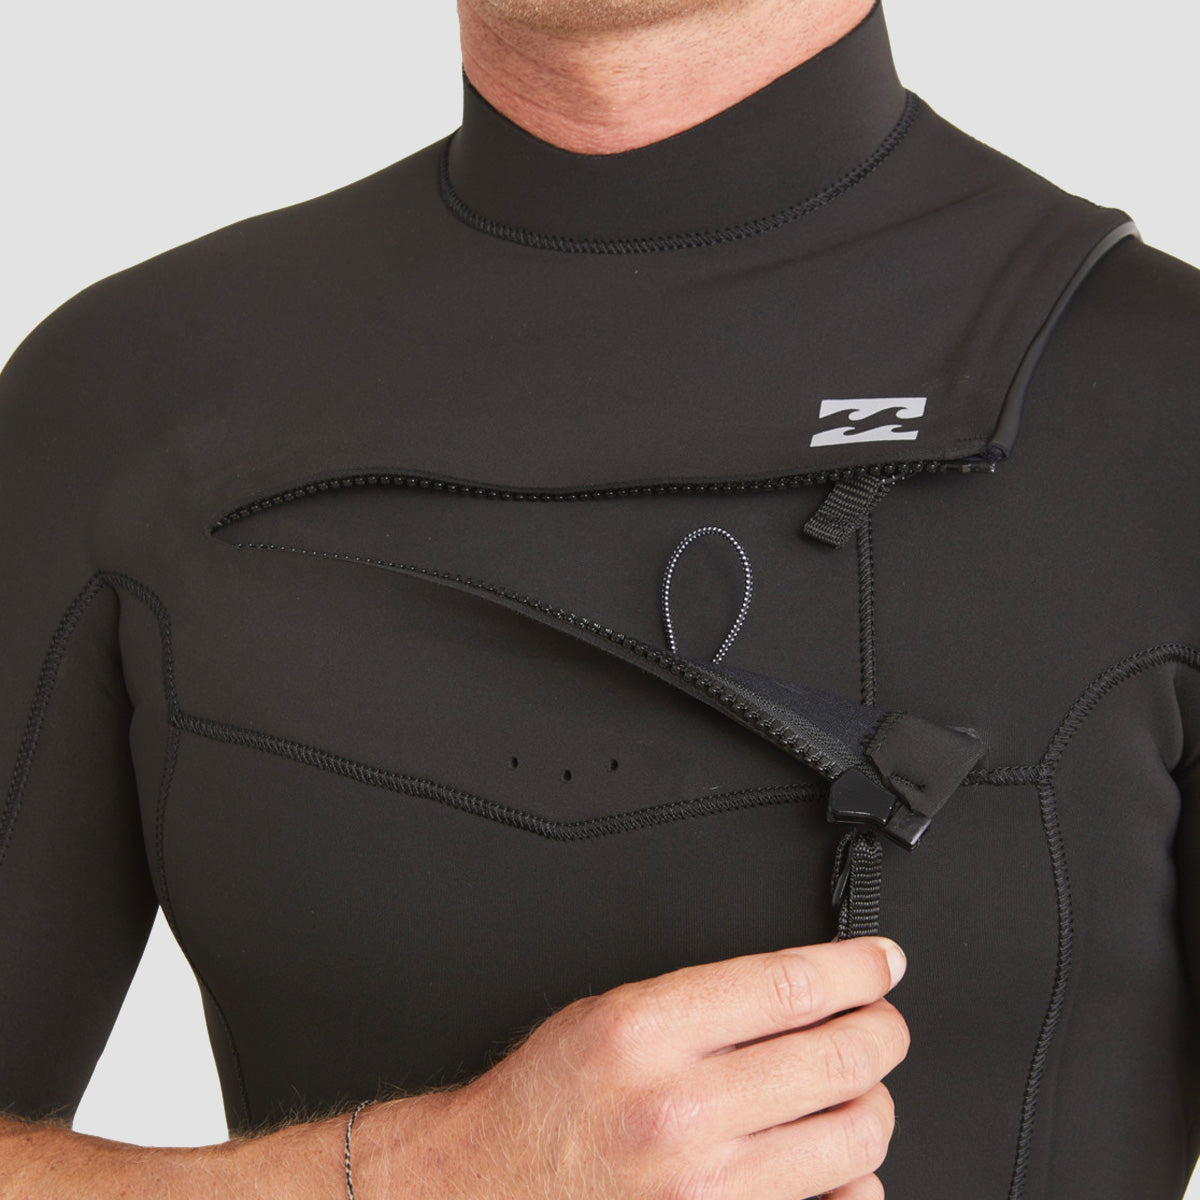 Billabong Absolute 2/2mm Chest Zip Short Sleeve Wetsuit Black